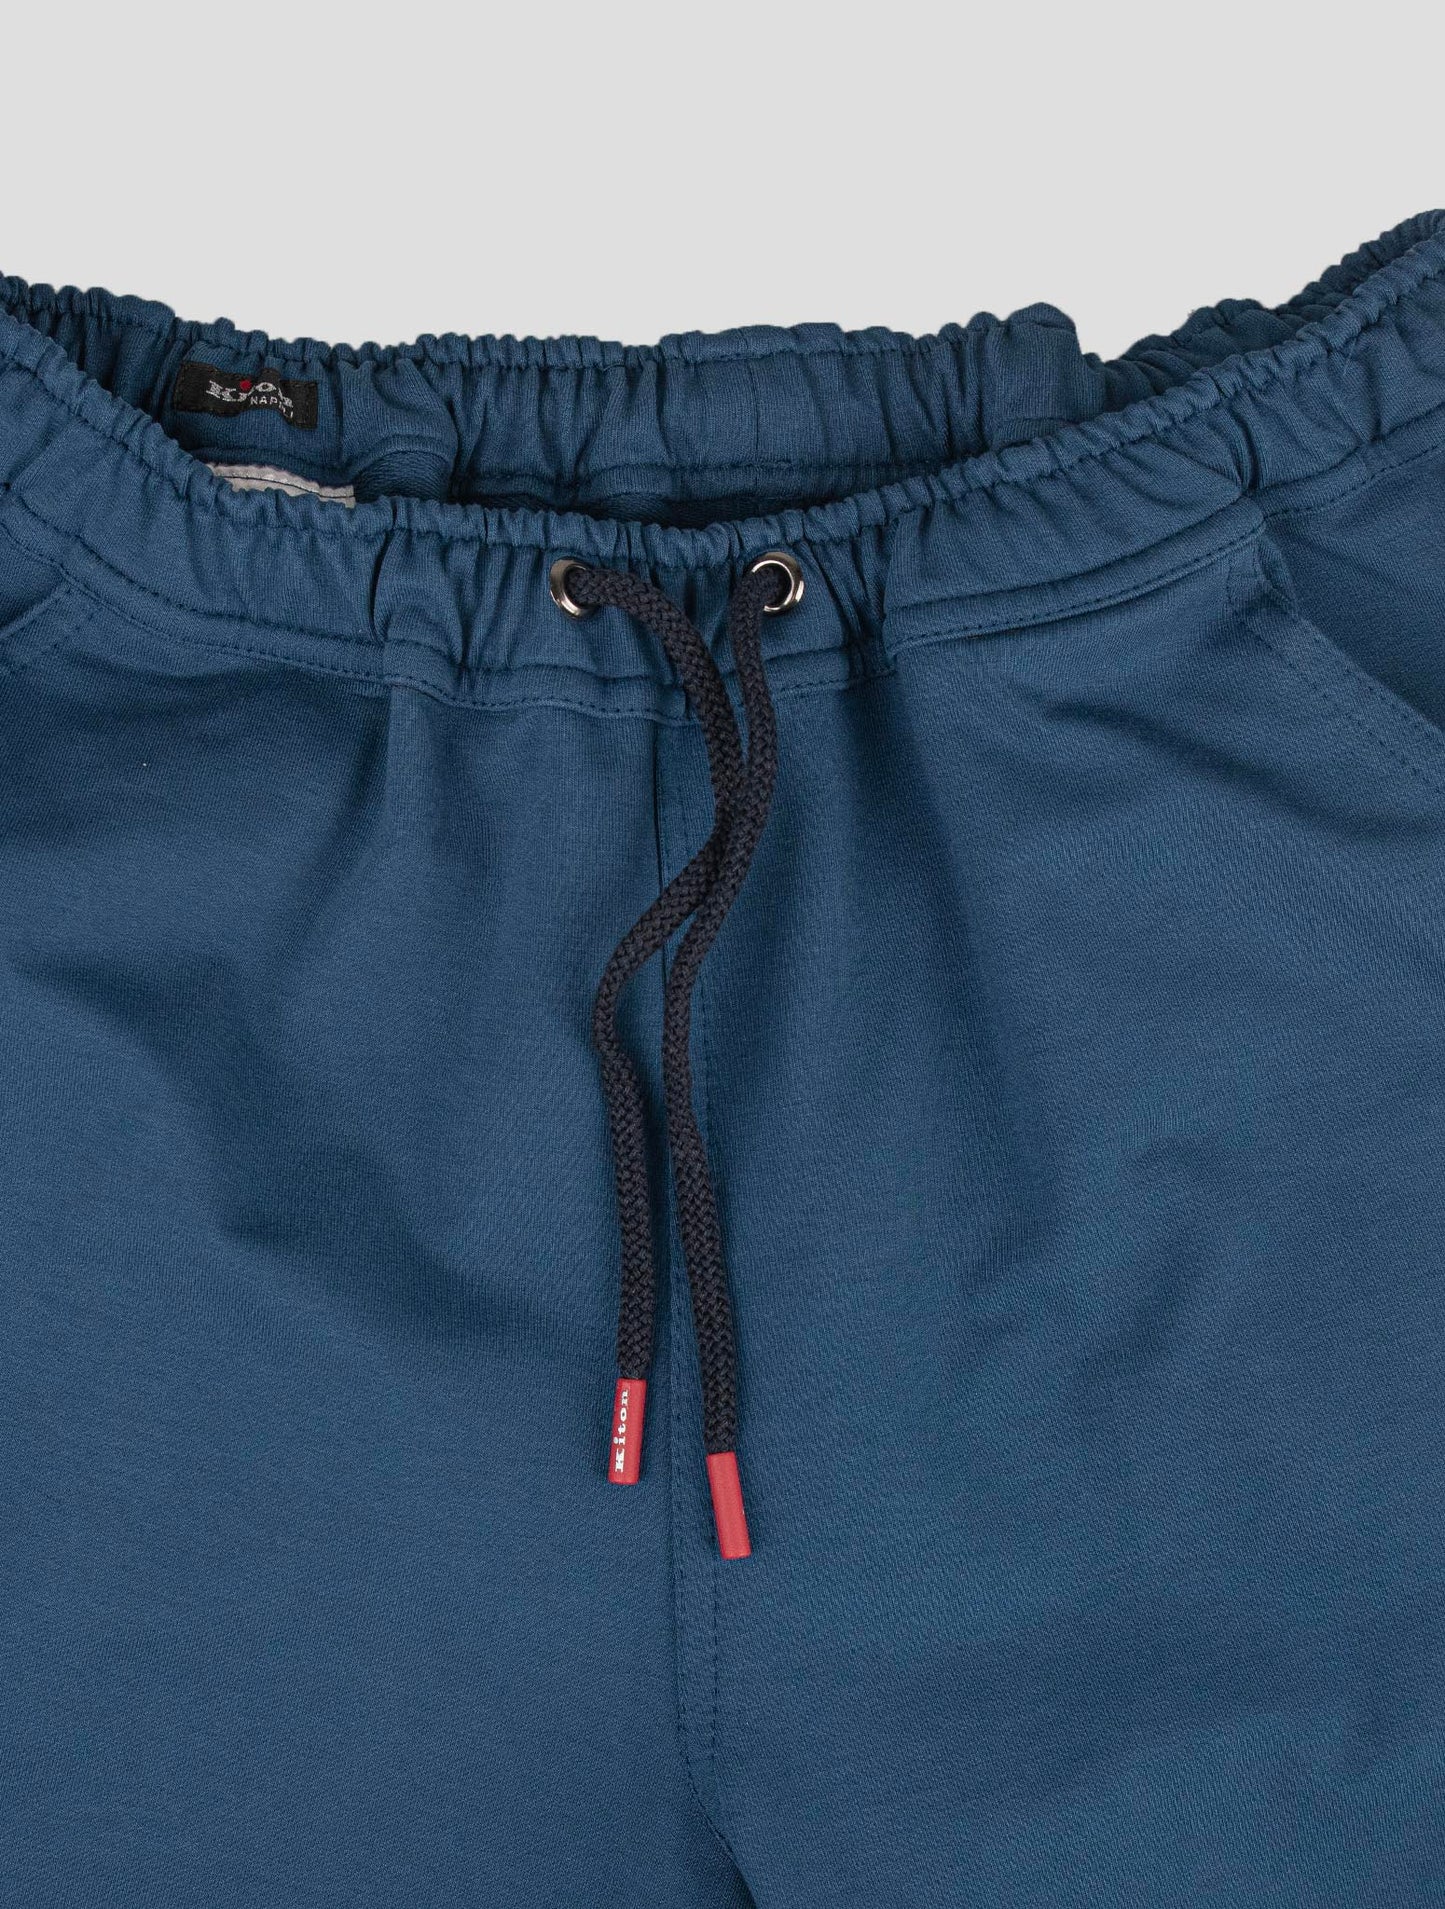 Kiton odgovarajuća odjeća - višebojna trenirka Mariano i plave kratke hlače